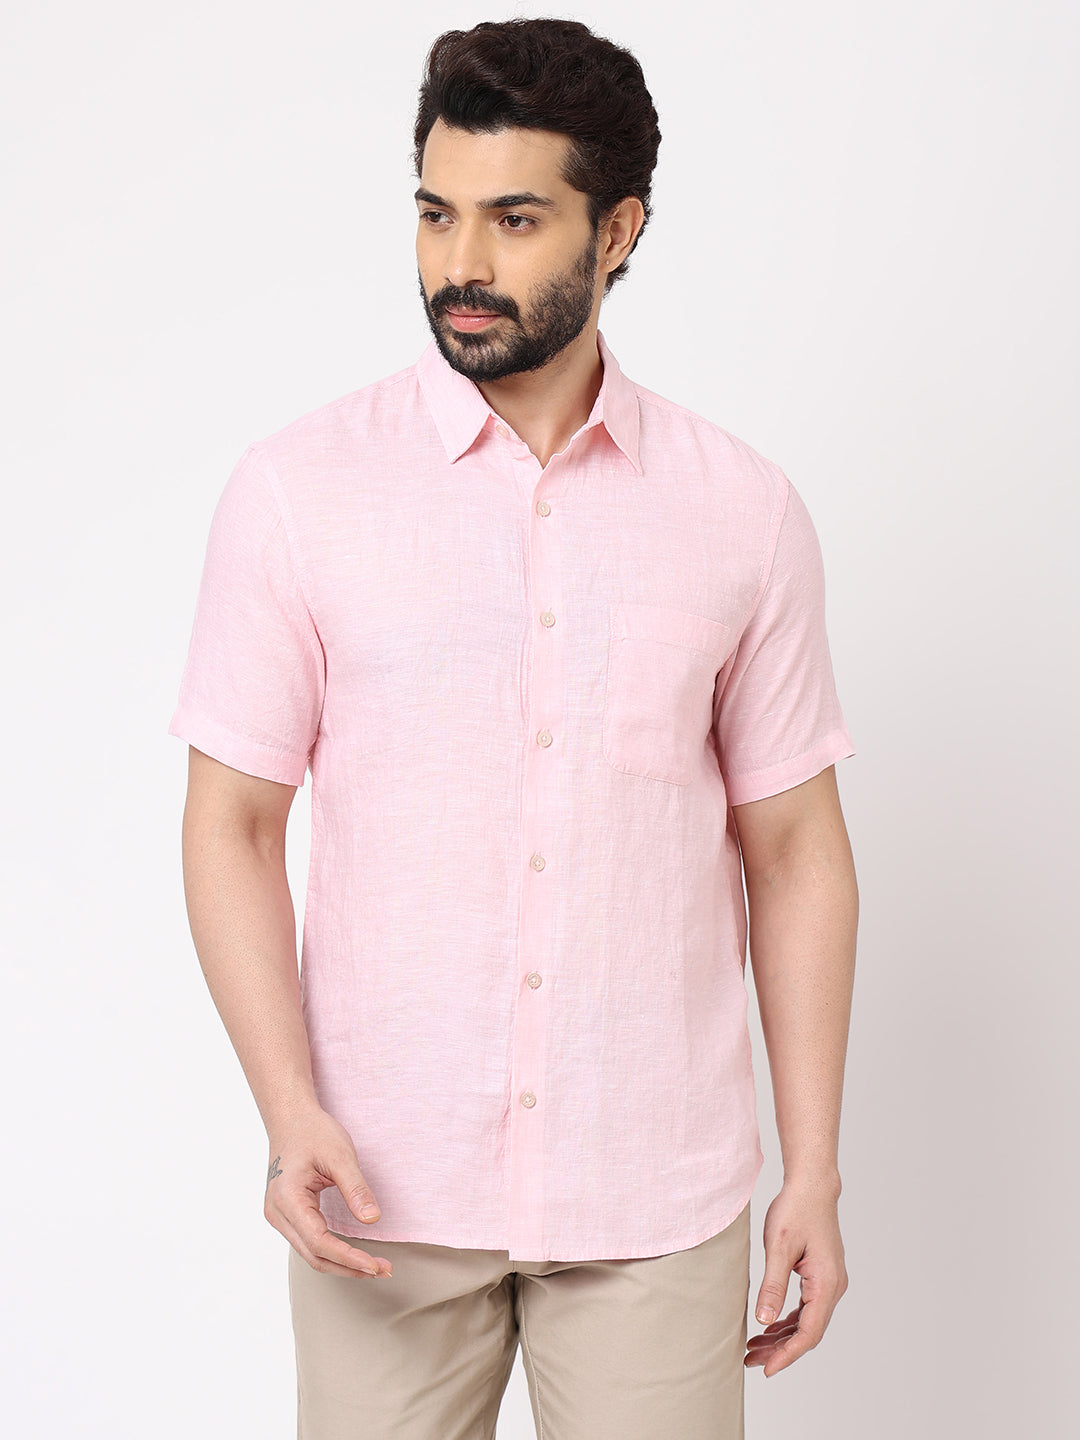 Mens 100% Linen Short Sleeve Light Pink Regular Fit Shirt